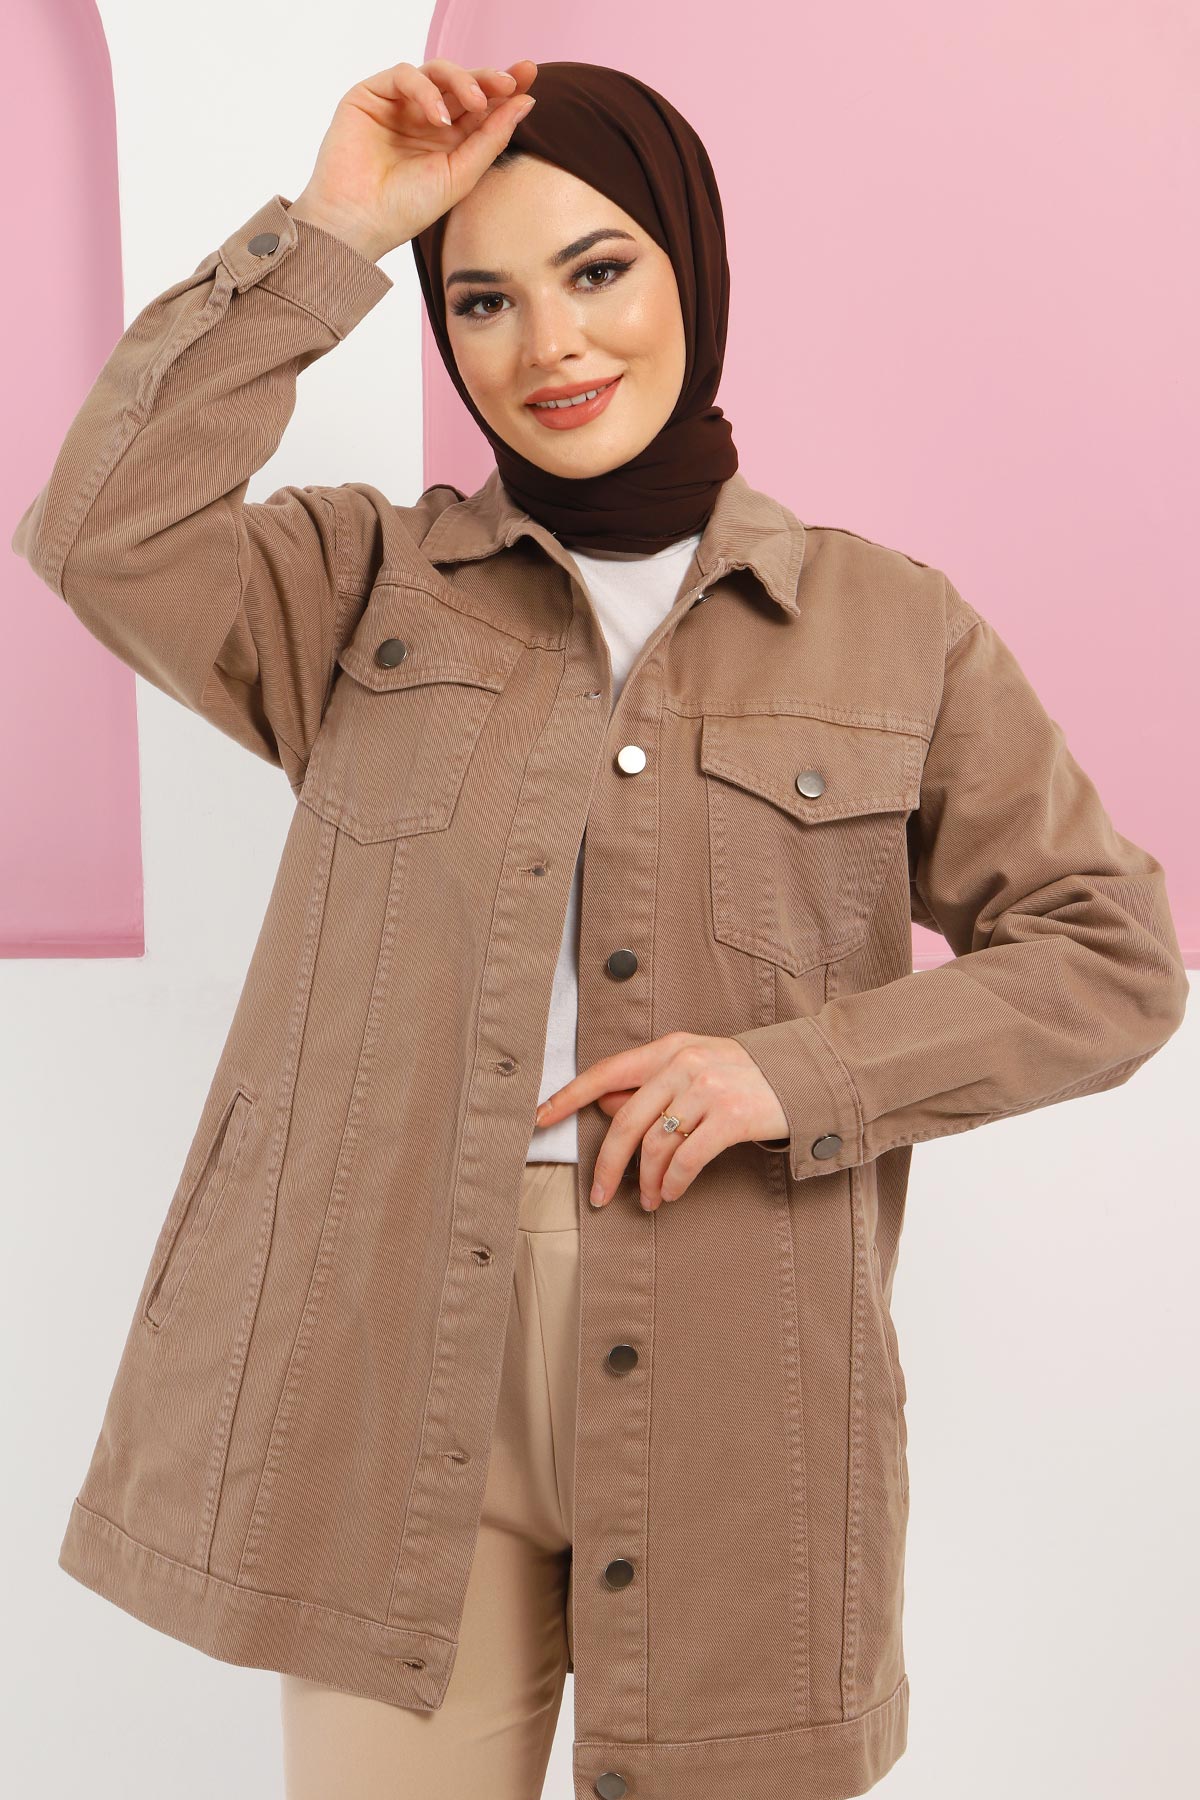 arabian women's clothing